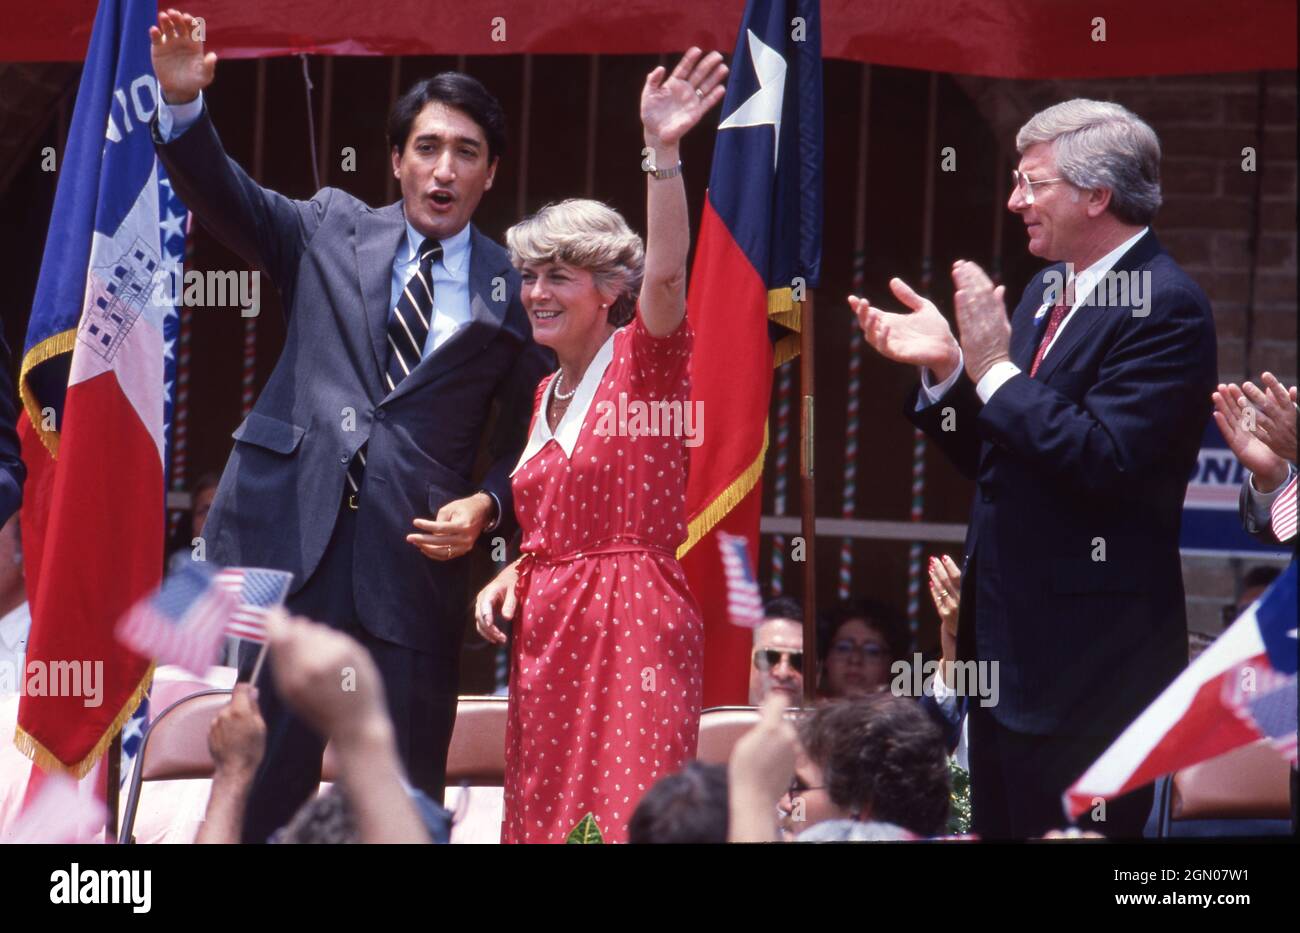 San Antonio Texas USA, 1984: Die demokratische Vizepräsidentialkandidatin Geraldine Ferraro winkt während einer Wahlkampfkundgebung auf dem Marktplatz zu den Unterstützern. Ferraro ist die erste Frau, die als Vizepräsidentin einer großen Partei in der amerikanischen Politik nominiert wurde. Flankiert wird sie von den Demokraten Henry Cisneros, dem Bürgermeister von San Antonio A (links) und Texas Gov. Mark White (Weiß) (rechts). ©Bob Daemmrich Stockfoto